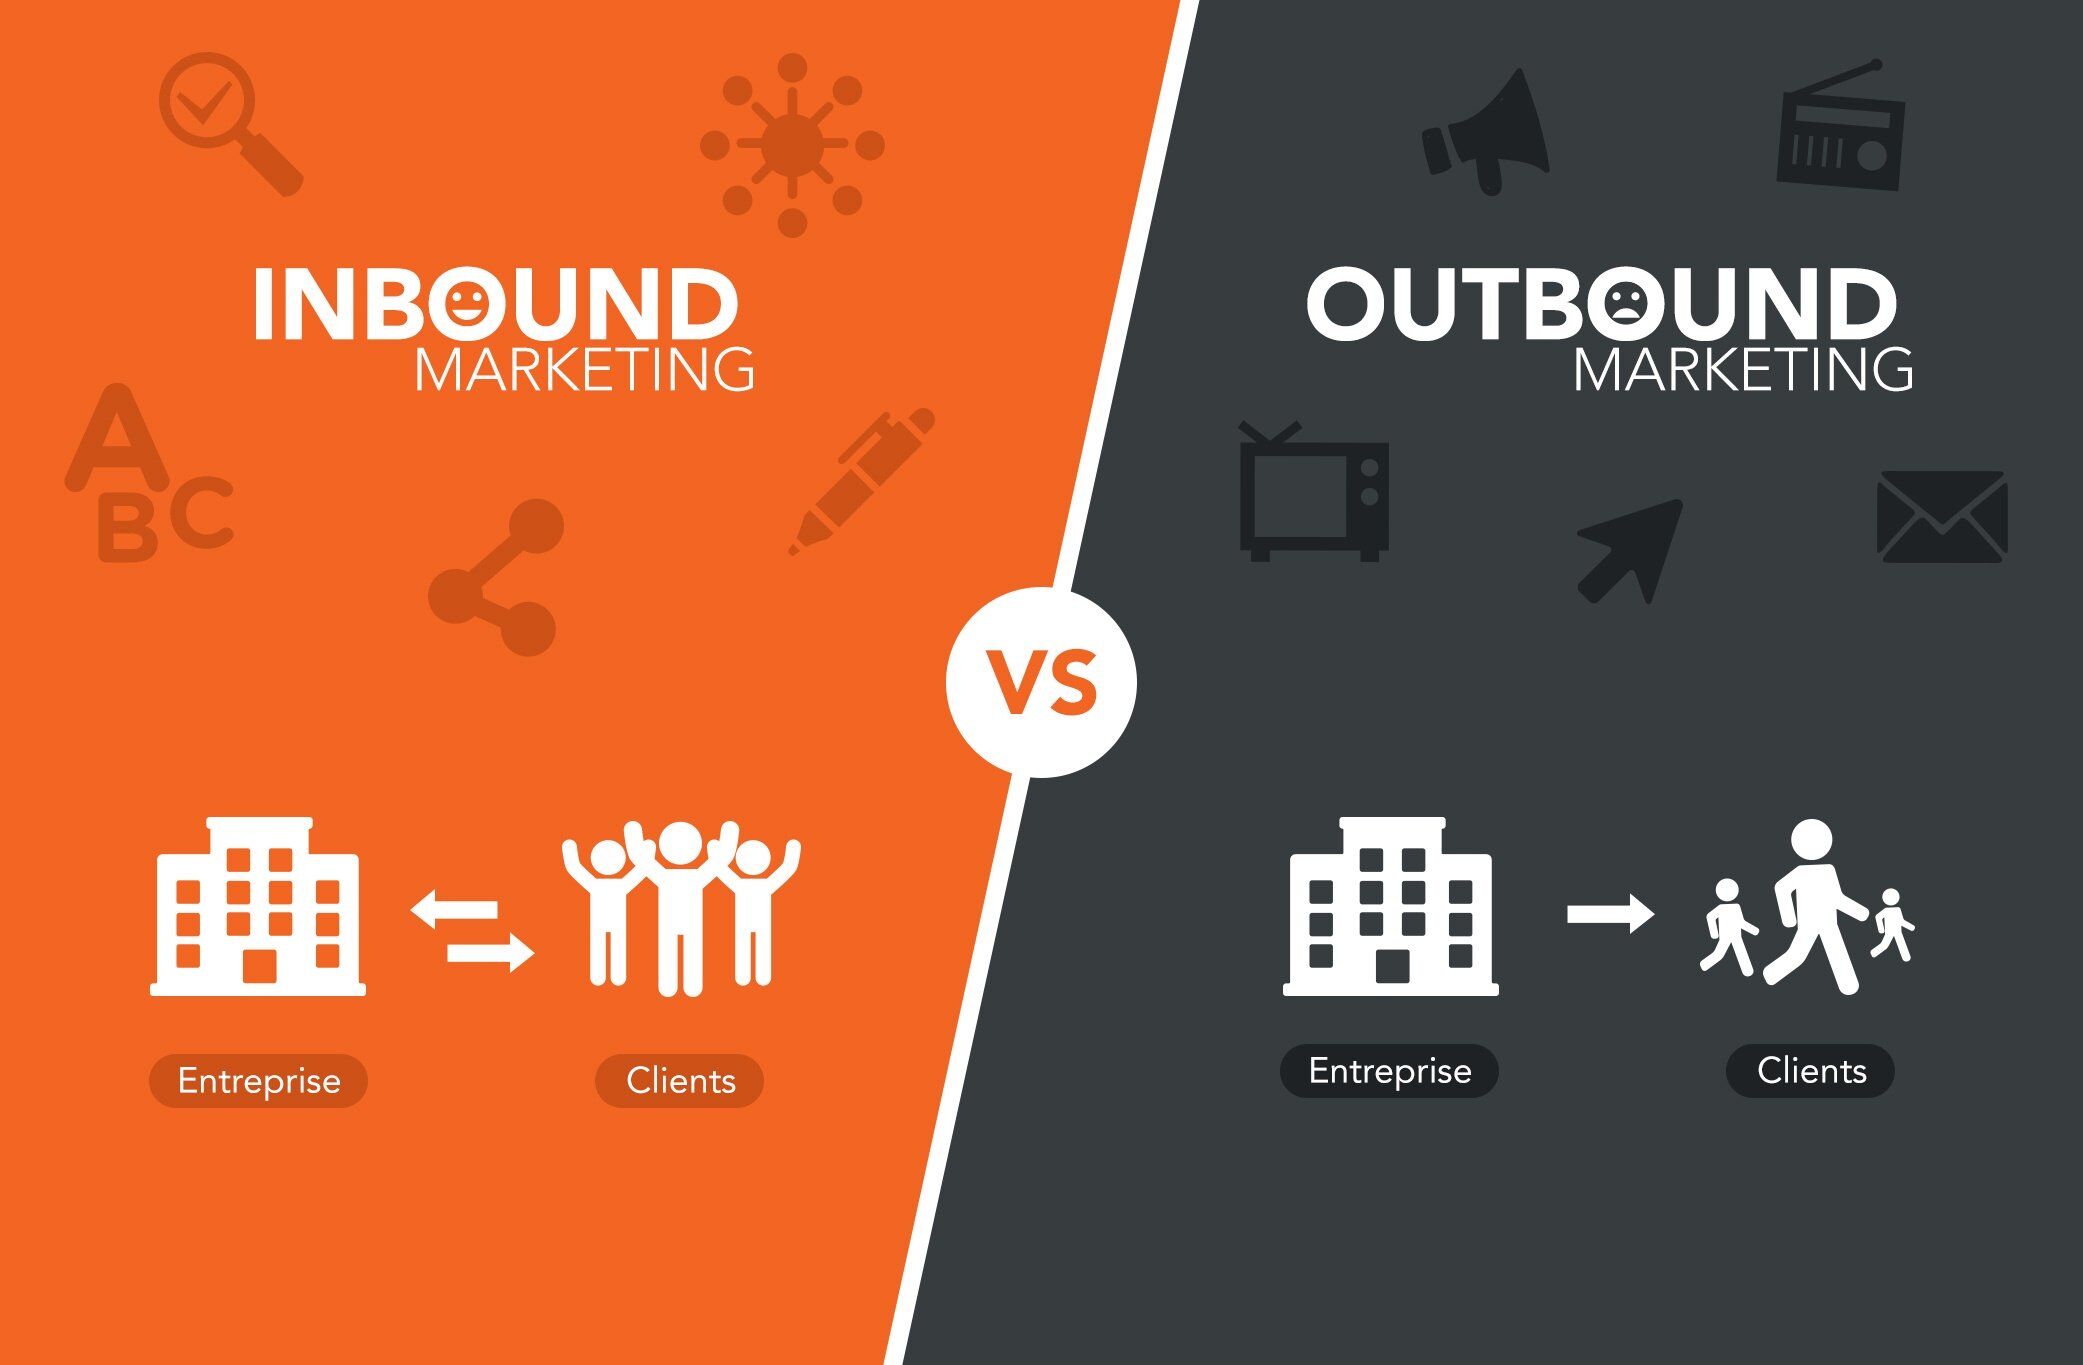 inbound vs outbound marketing strategies